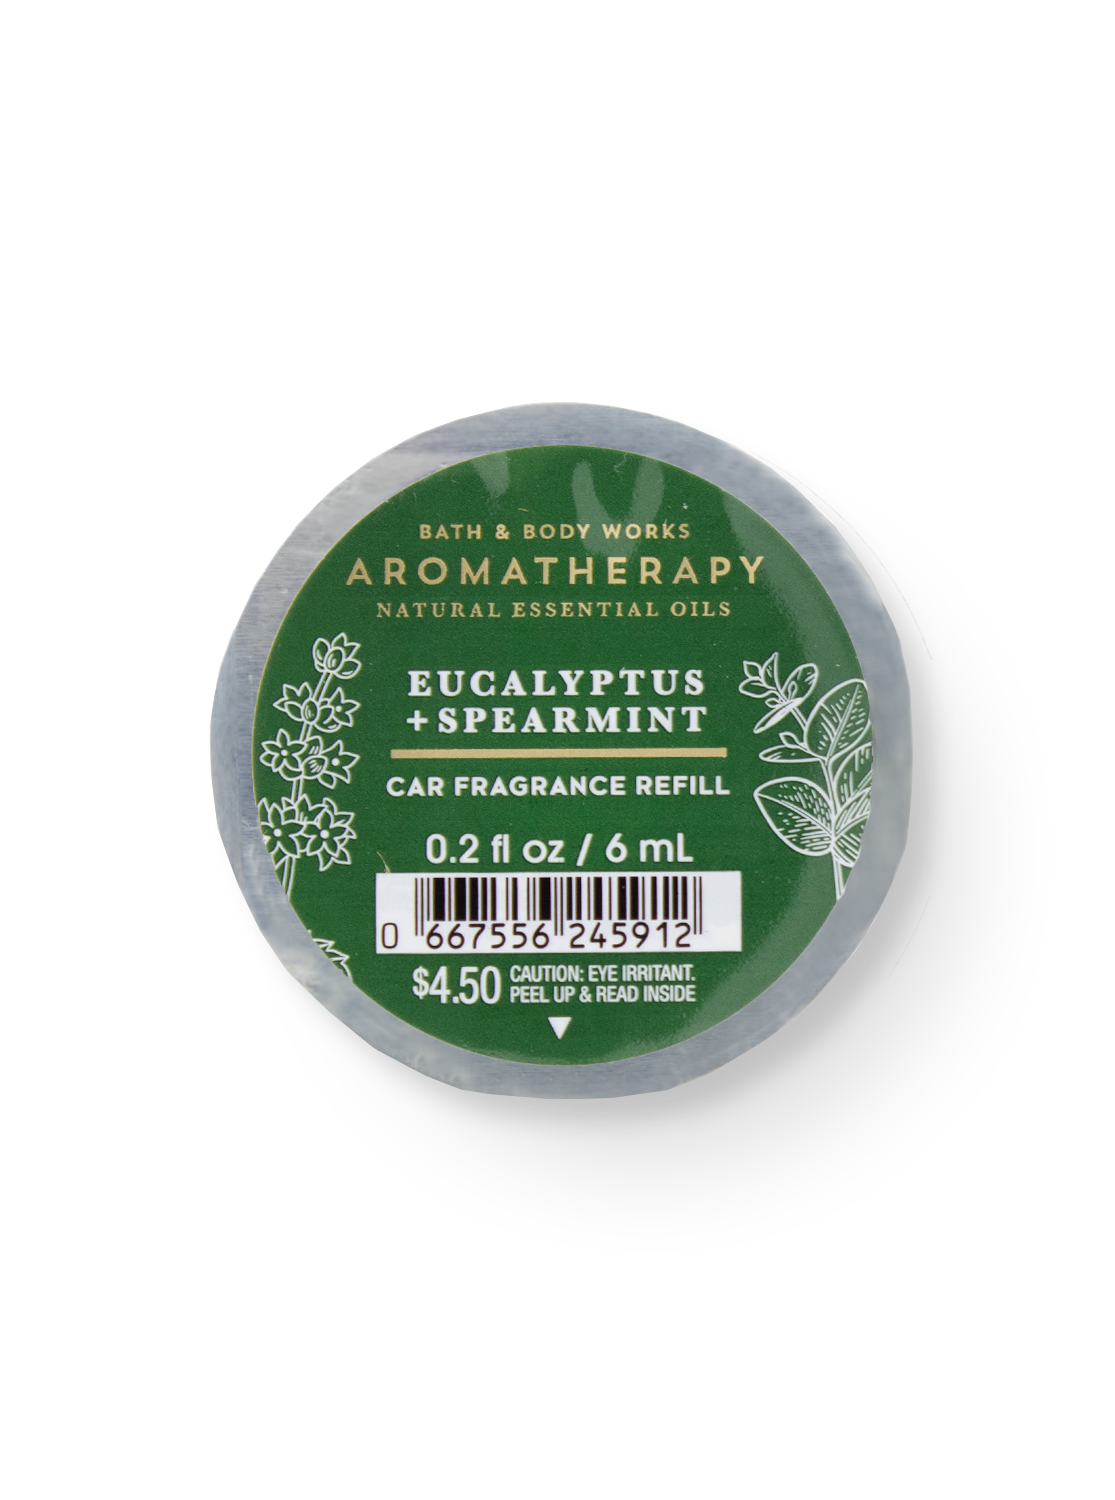 Air Freshener Refill - Aromatherapy - Eucalyptus Spearmint - 6ml 